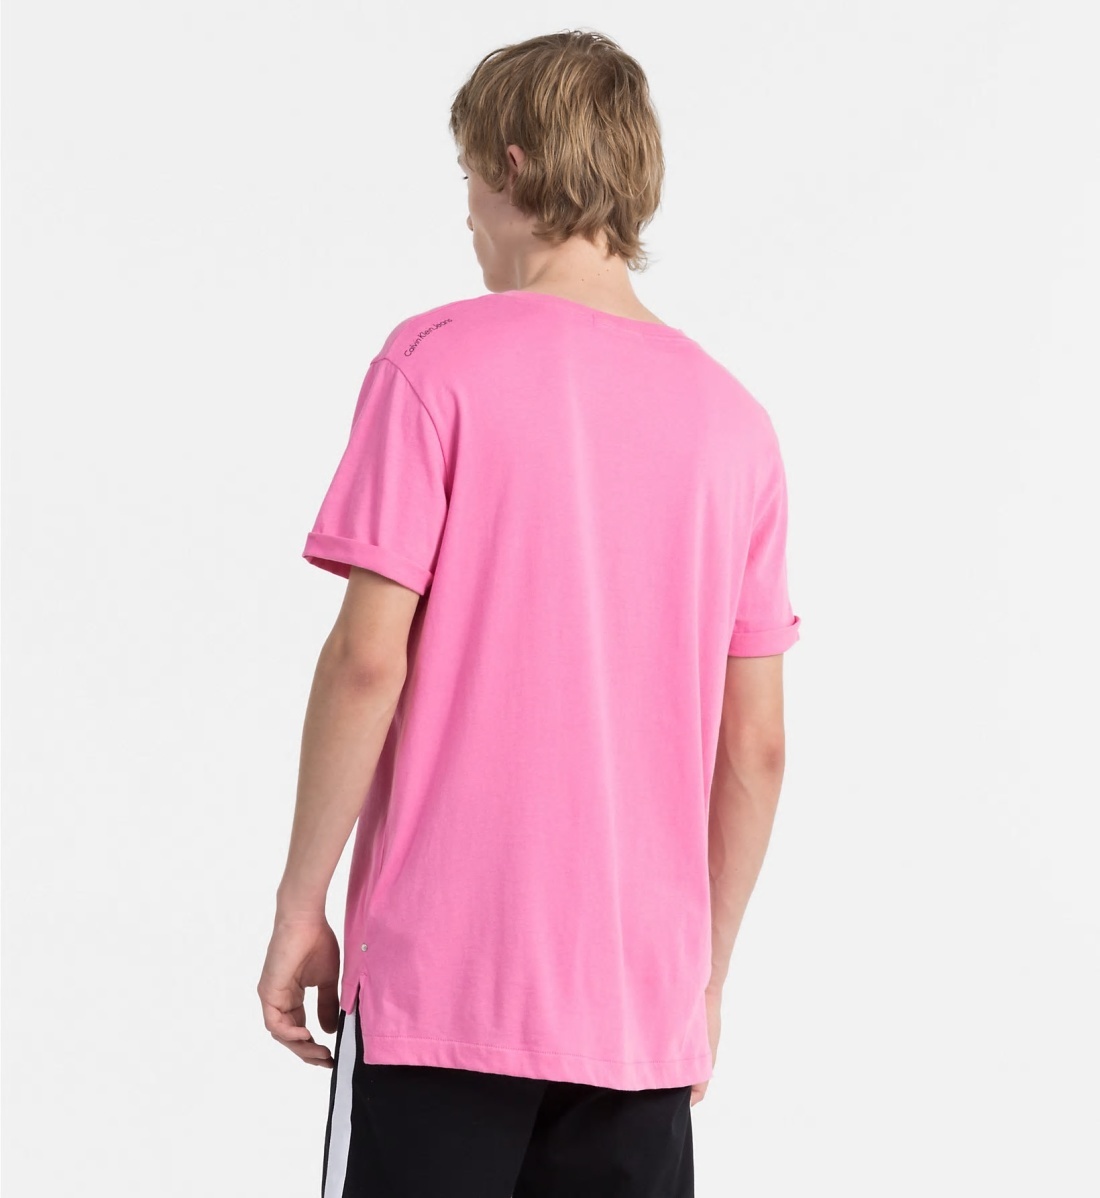 Calvin Klein pánske ružové tričko - L (694)